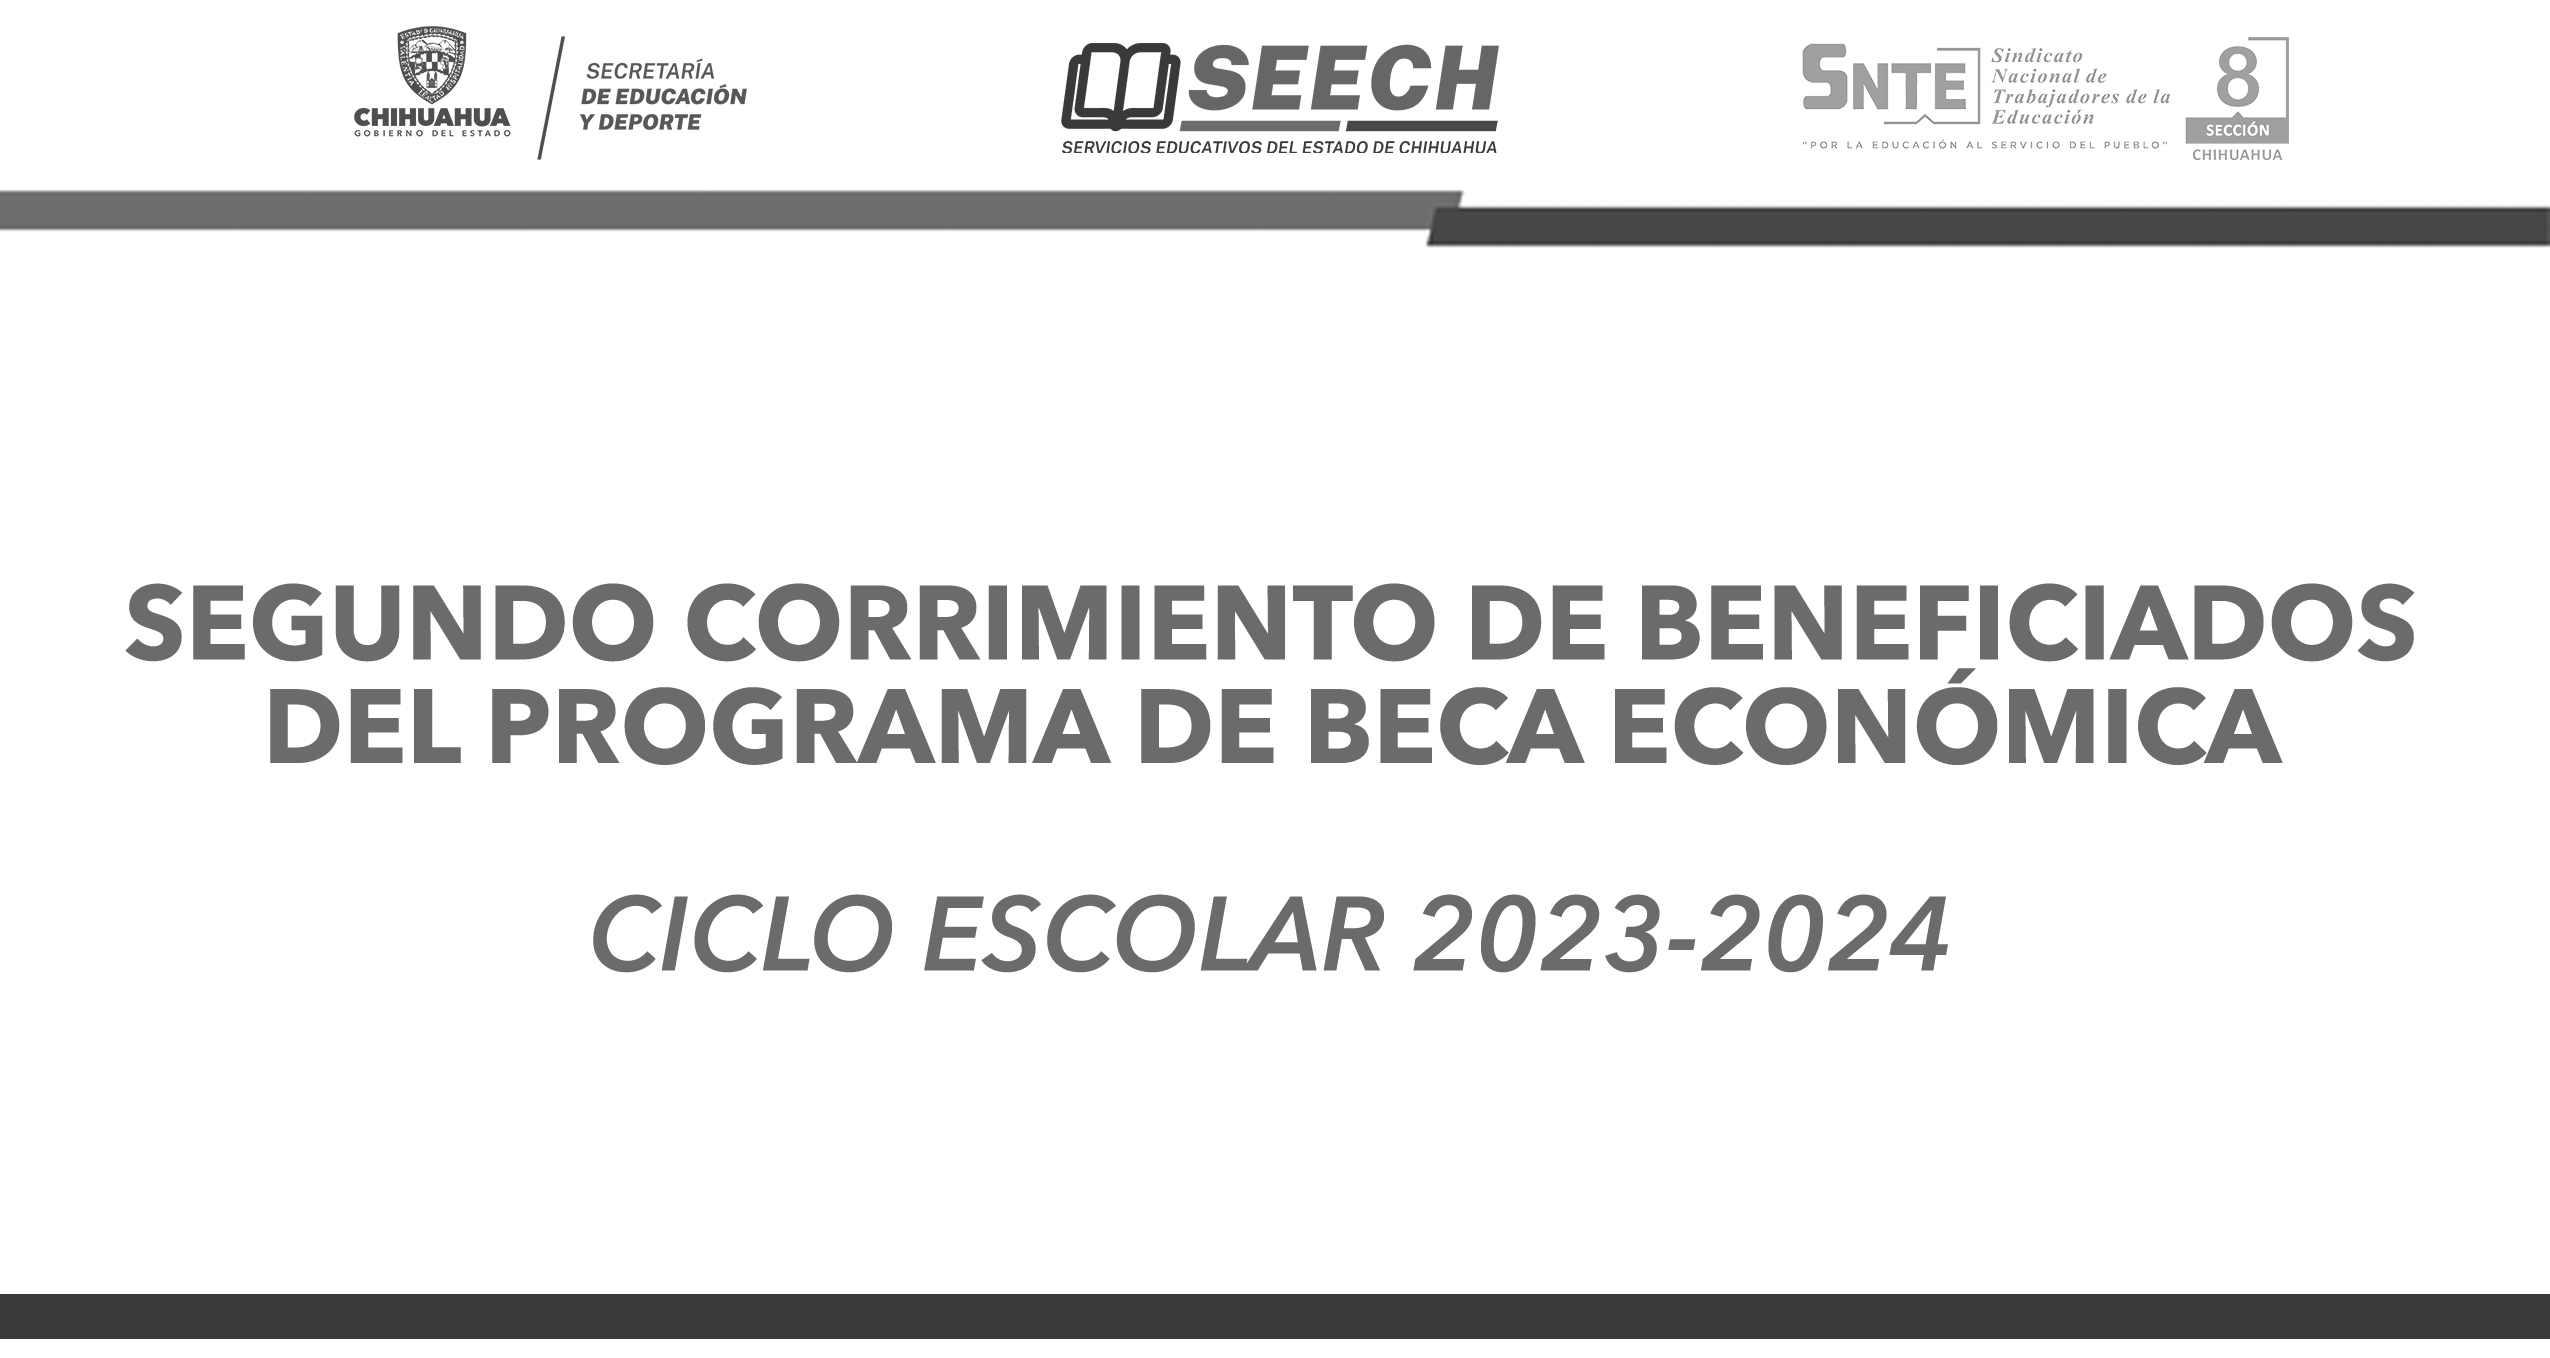 SEGUNDO CORRIMIENTO DE BENEFICIADOS DEL PROGRAMA DE BECA ECONÓMICA CICLO ESCOLAR 2023-2024